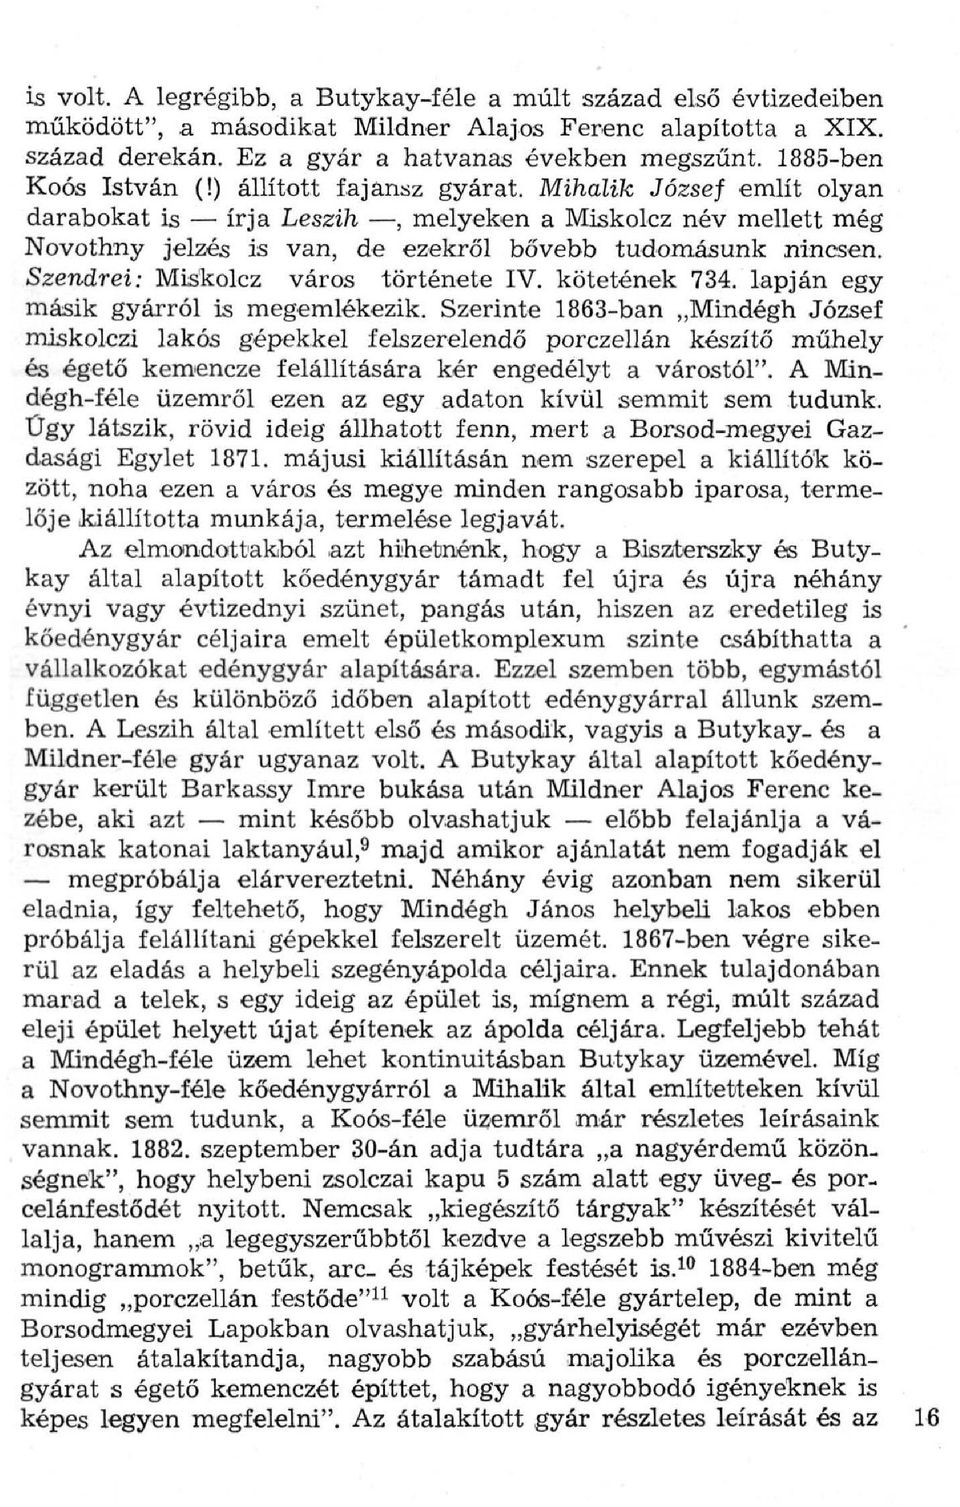 Szendrei: Miskolcz város története IV. kötetének 734. lapján egy másik gyárról is megemlékezik.